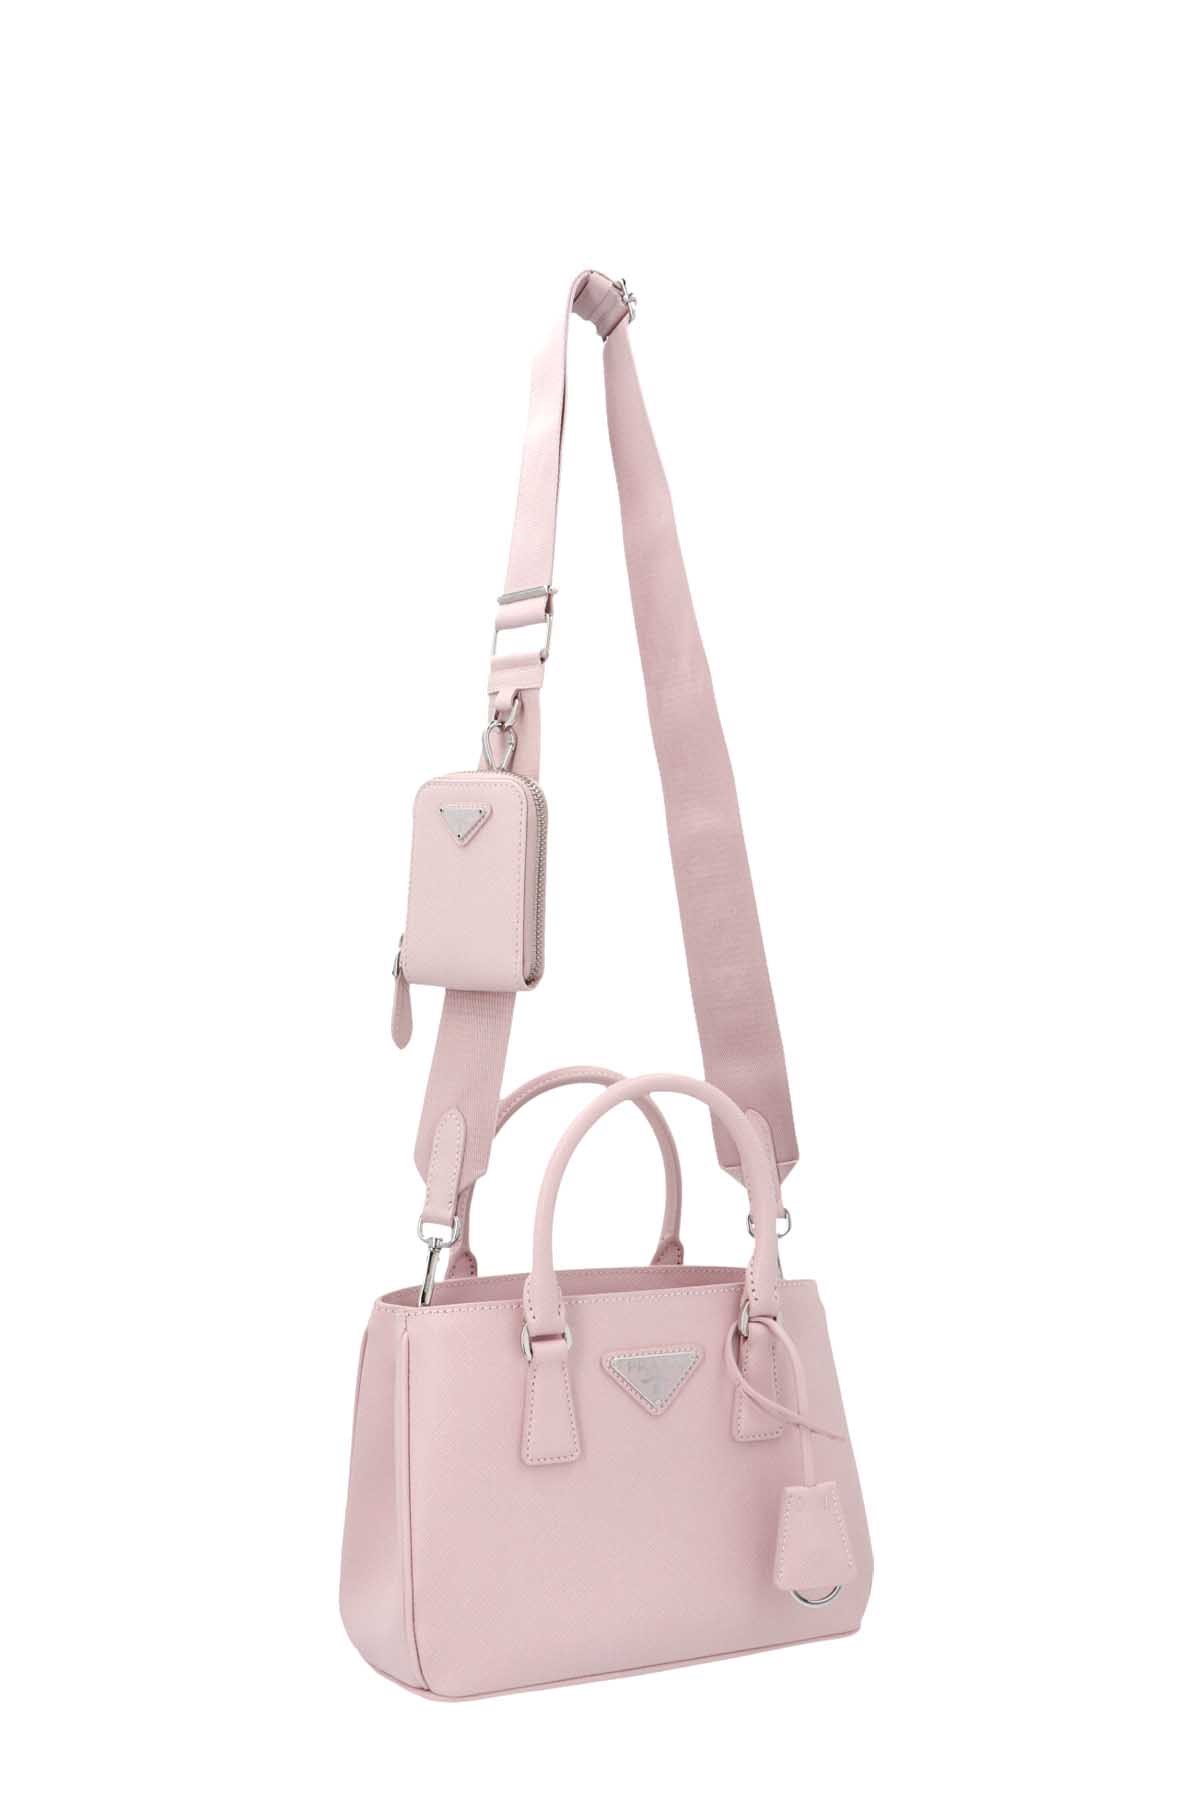 PRADA 'Galleria' Handbag